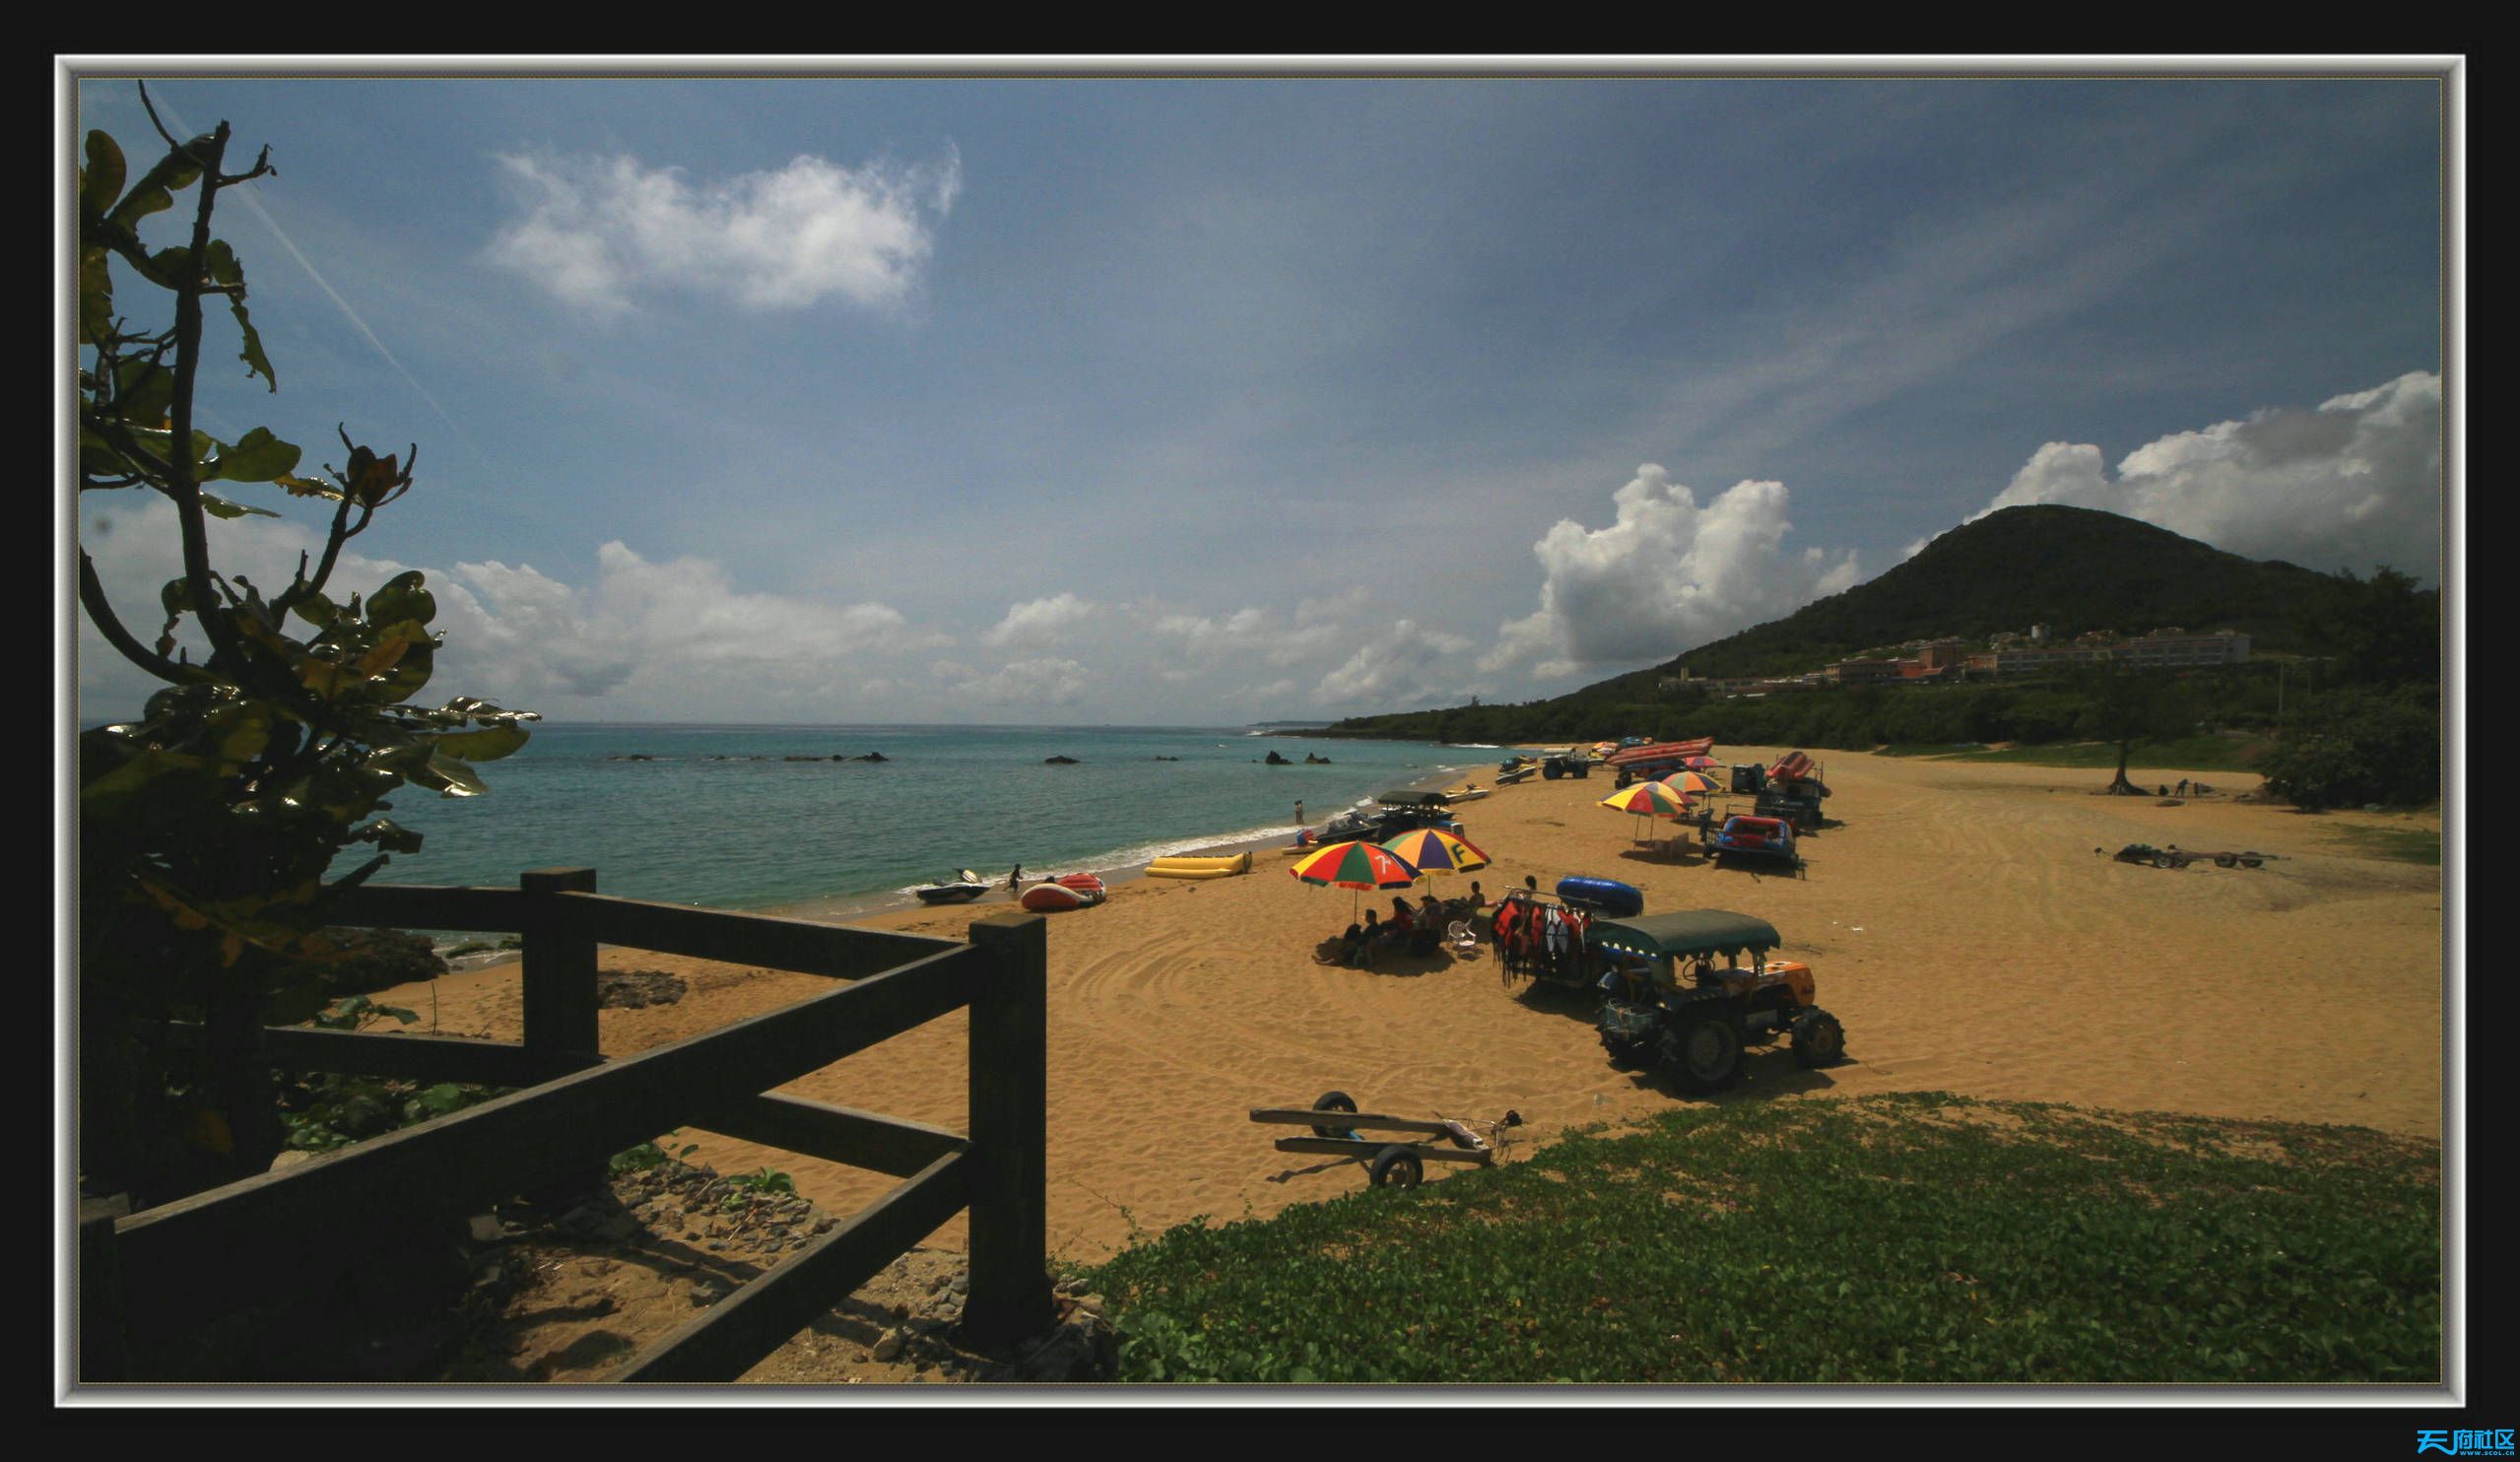 【台湾风情】垦丁国家公园最漂亮的海滩白沙湾